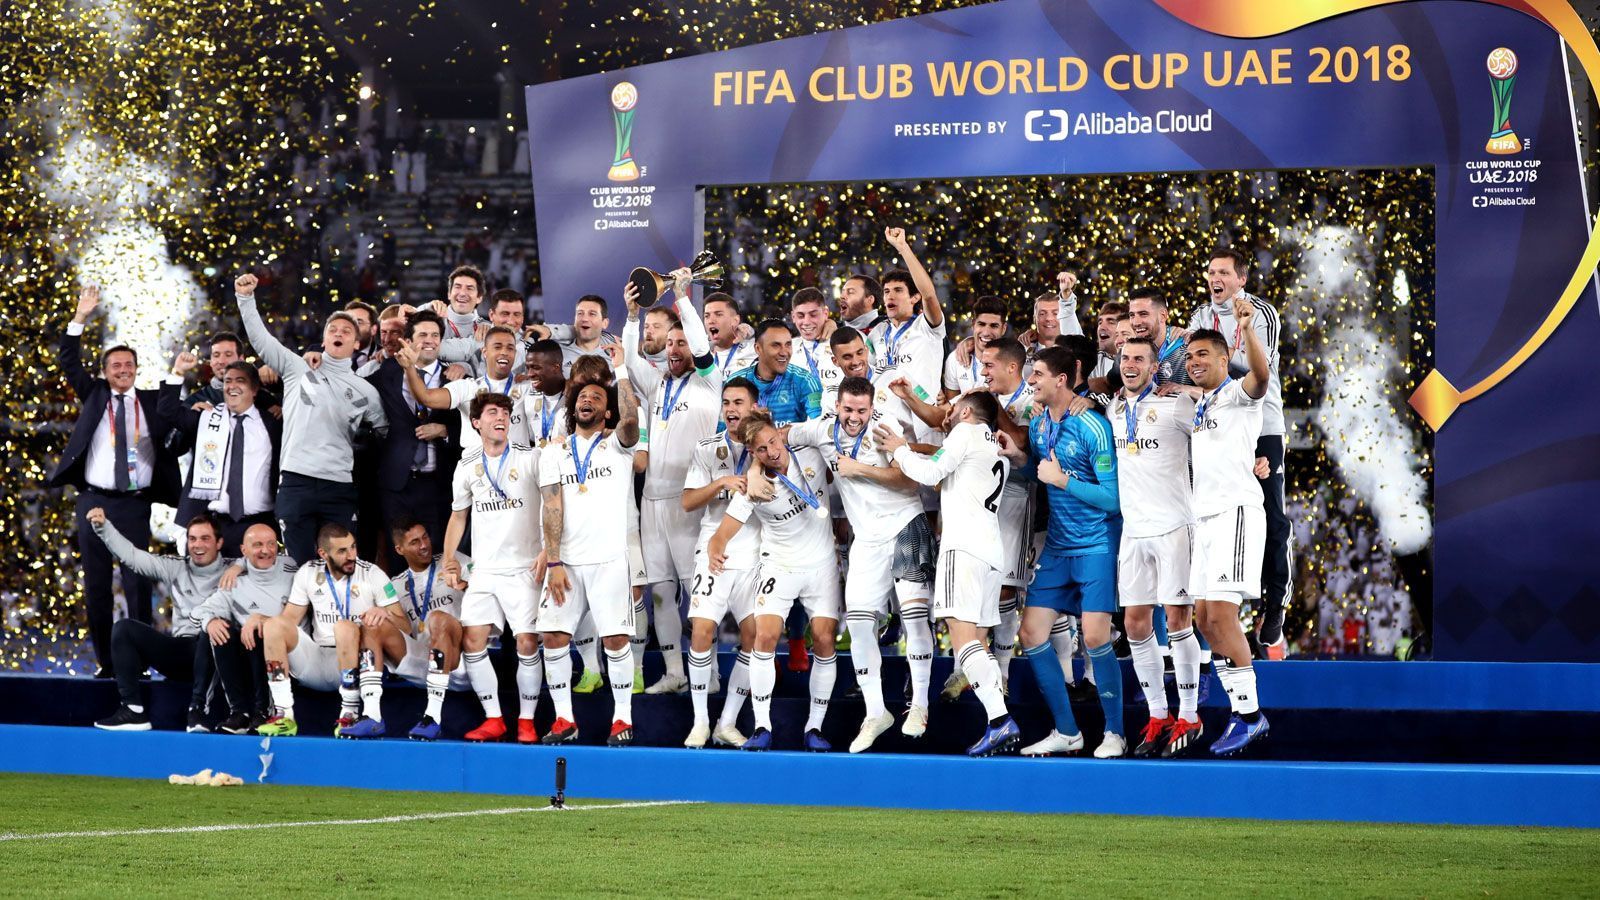 
                <strong>Fünf Klub-Weltmeistertitel</strong><br>
                Mit fünf Titeln ist die Klub-Weltmeisterschaft der FIFA der Wettbewerb, den Toni Kroos neben dem UEFA Supercup im bisherigen Verlauf seiner Karriere am häufigsten gewonnen hat. Der erste Triumph erfolgte 2013 im Anschluss an die Triple-Saison mit dem FC Bayern, 2014 und von 2016 bis 2018 gewann Kroos den Titel dann weitere viermal mit den Königlichen. Als amtierenden Champions-League-Sieger haben Kroos und Real Madrid schon in dieser Saison die nächste Chance.
              